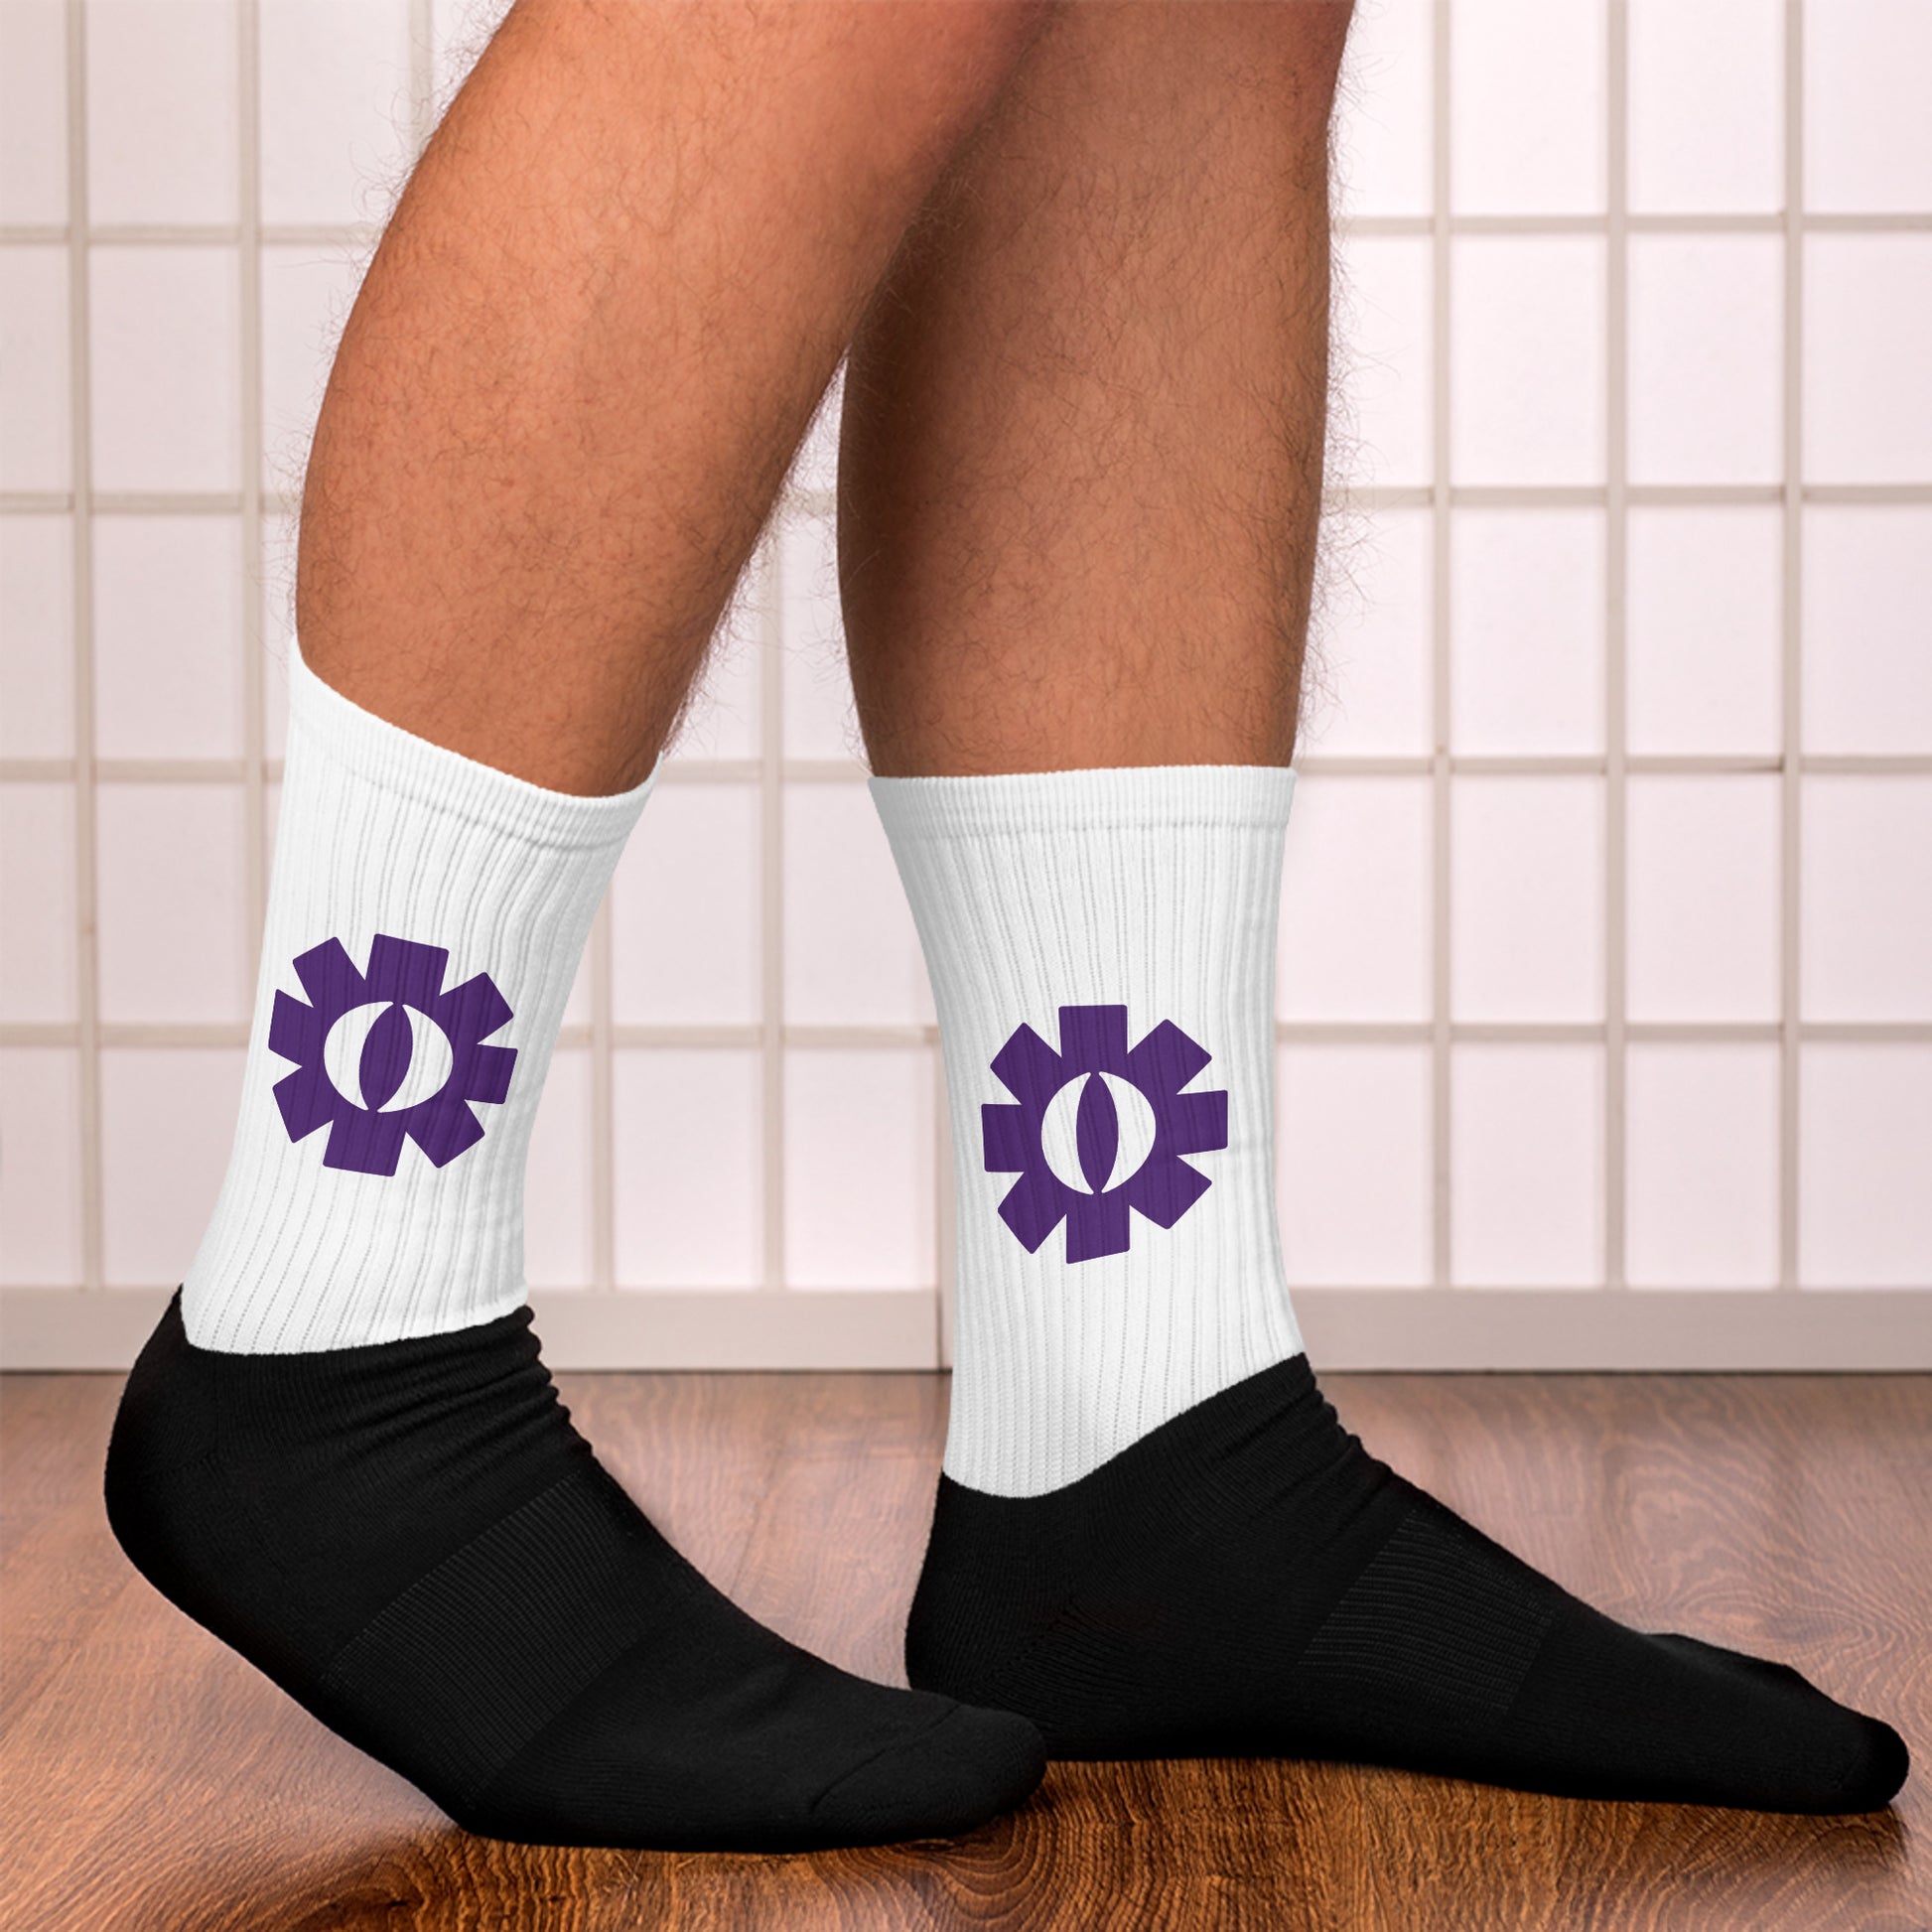 Schwarz weiße Socken mit Logo 